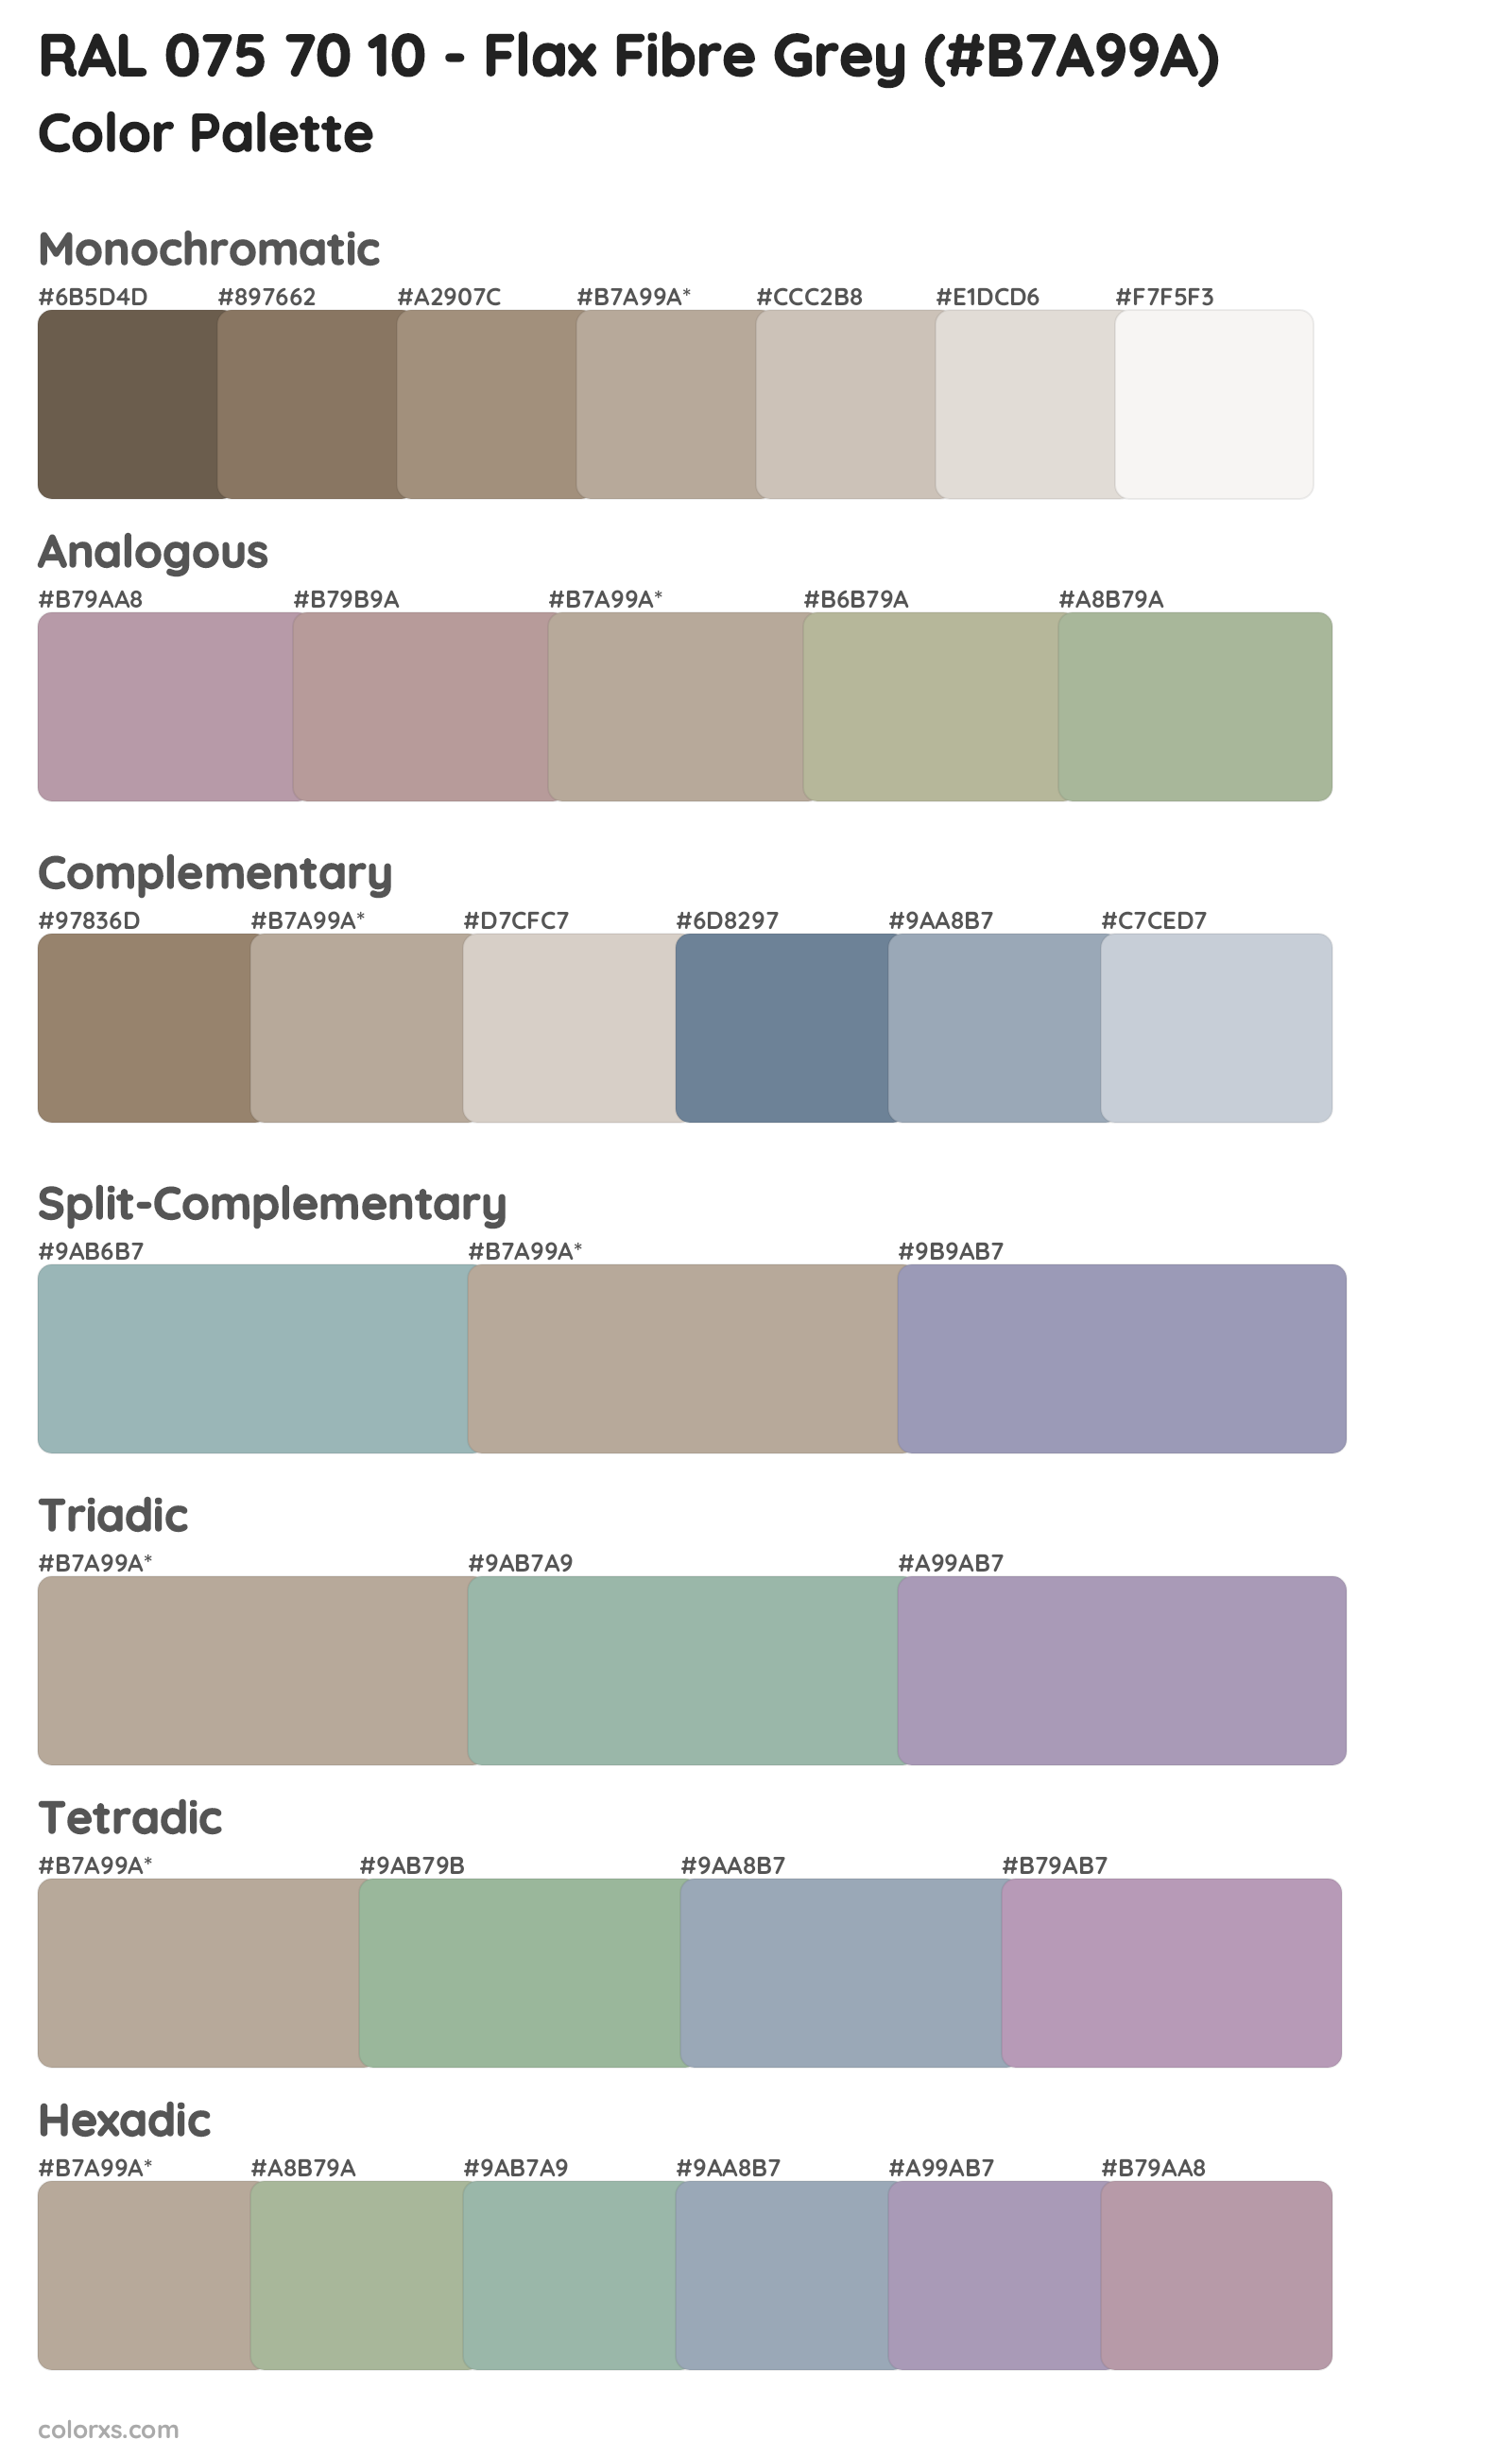 RAL 075 70 10 - Flax Fibre Grey Color Scheme Palettes